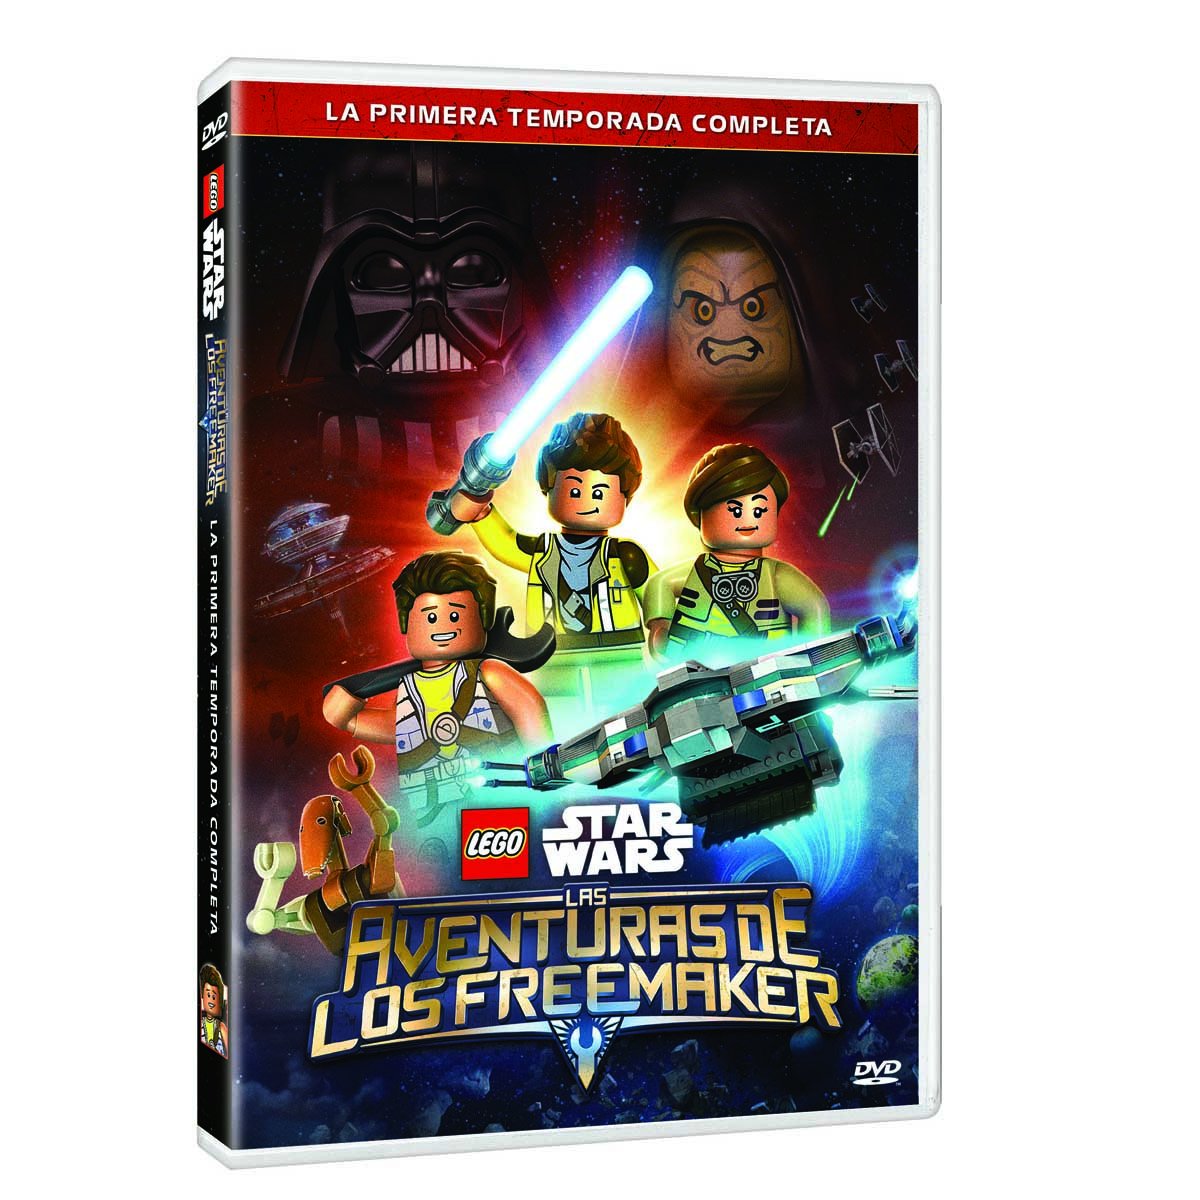 Dvd Lego Star Wars las Aventuras de los Freemaker